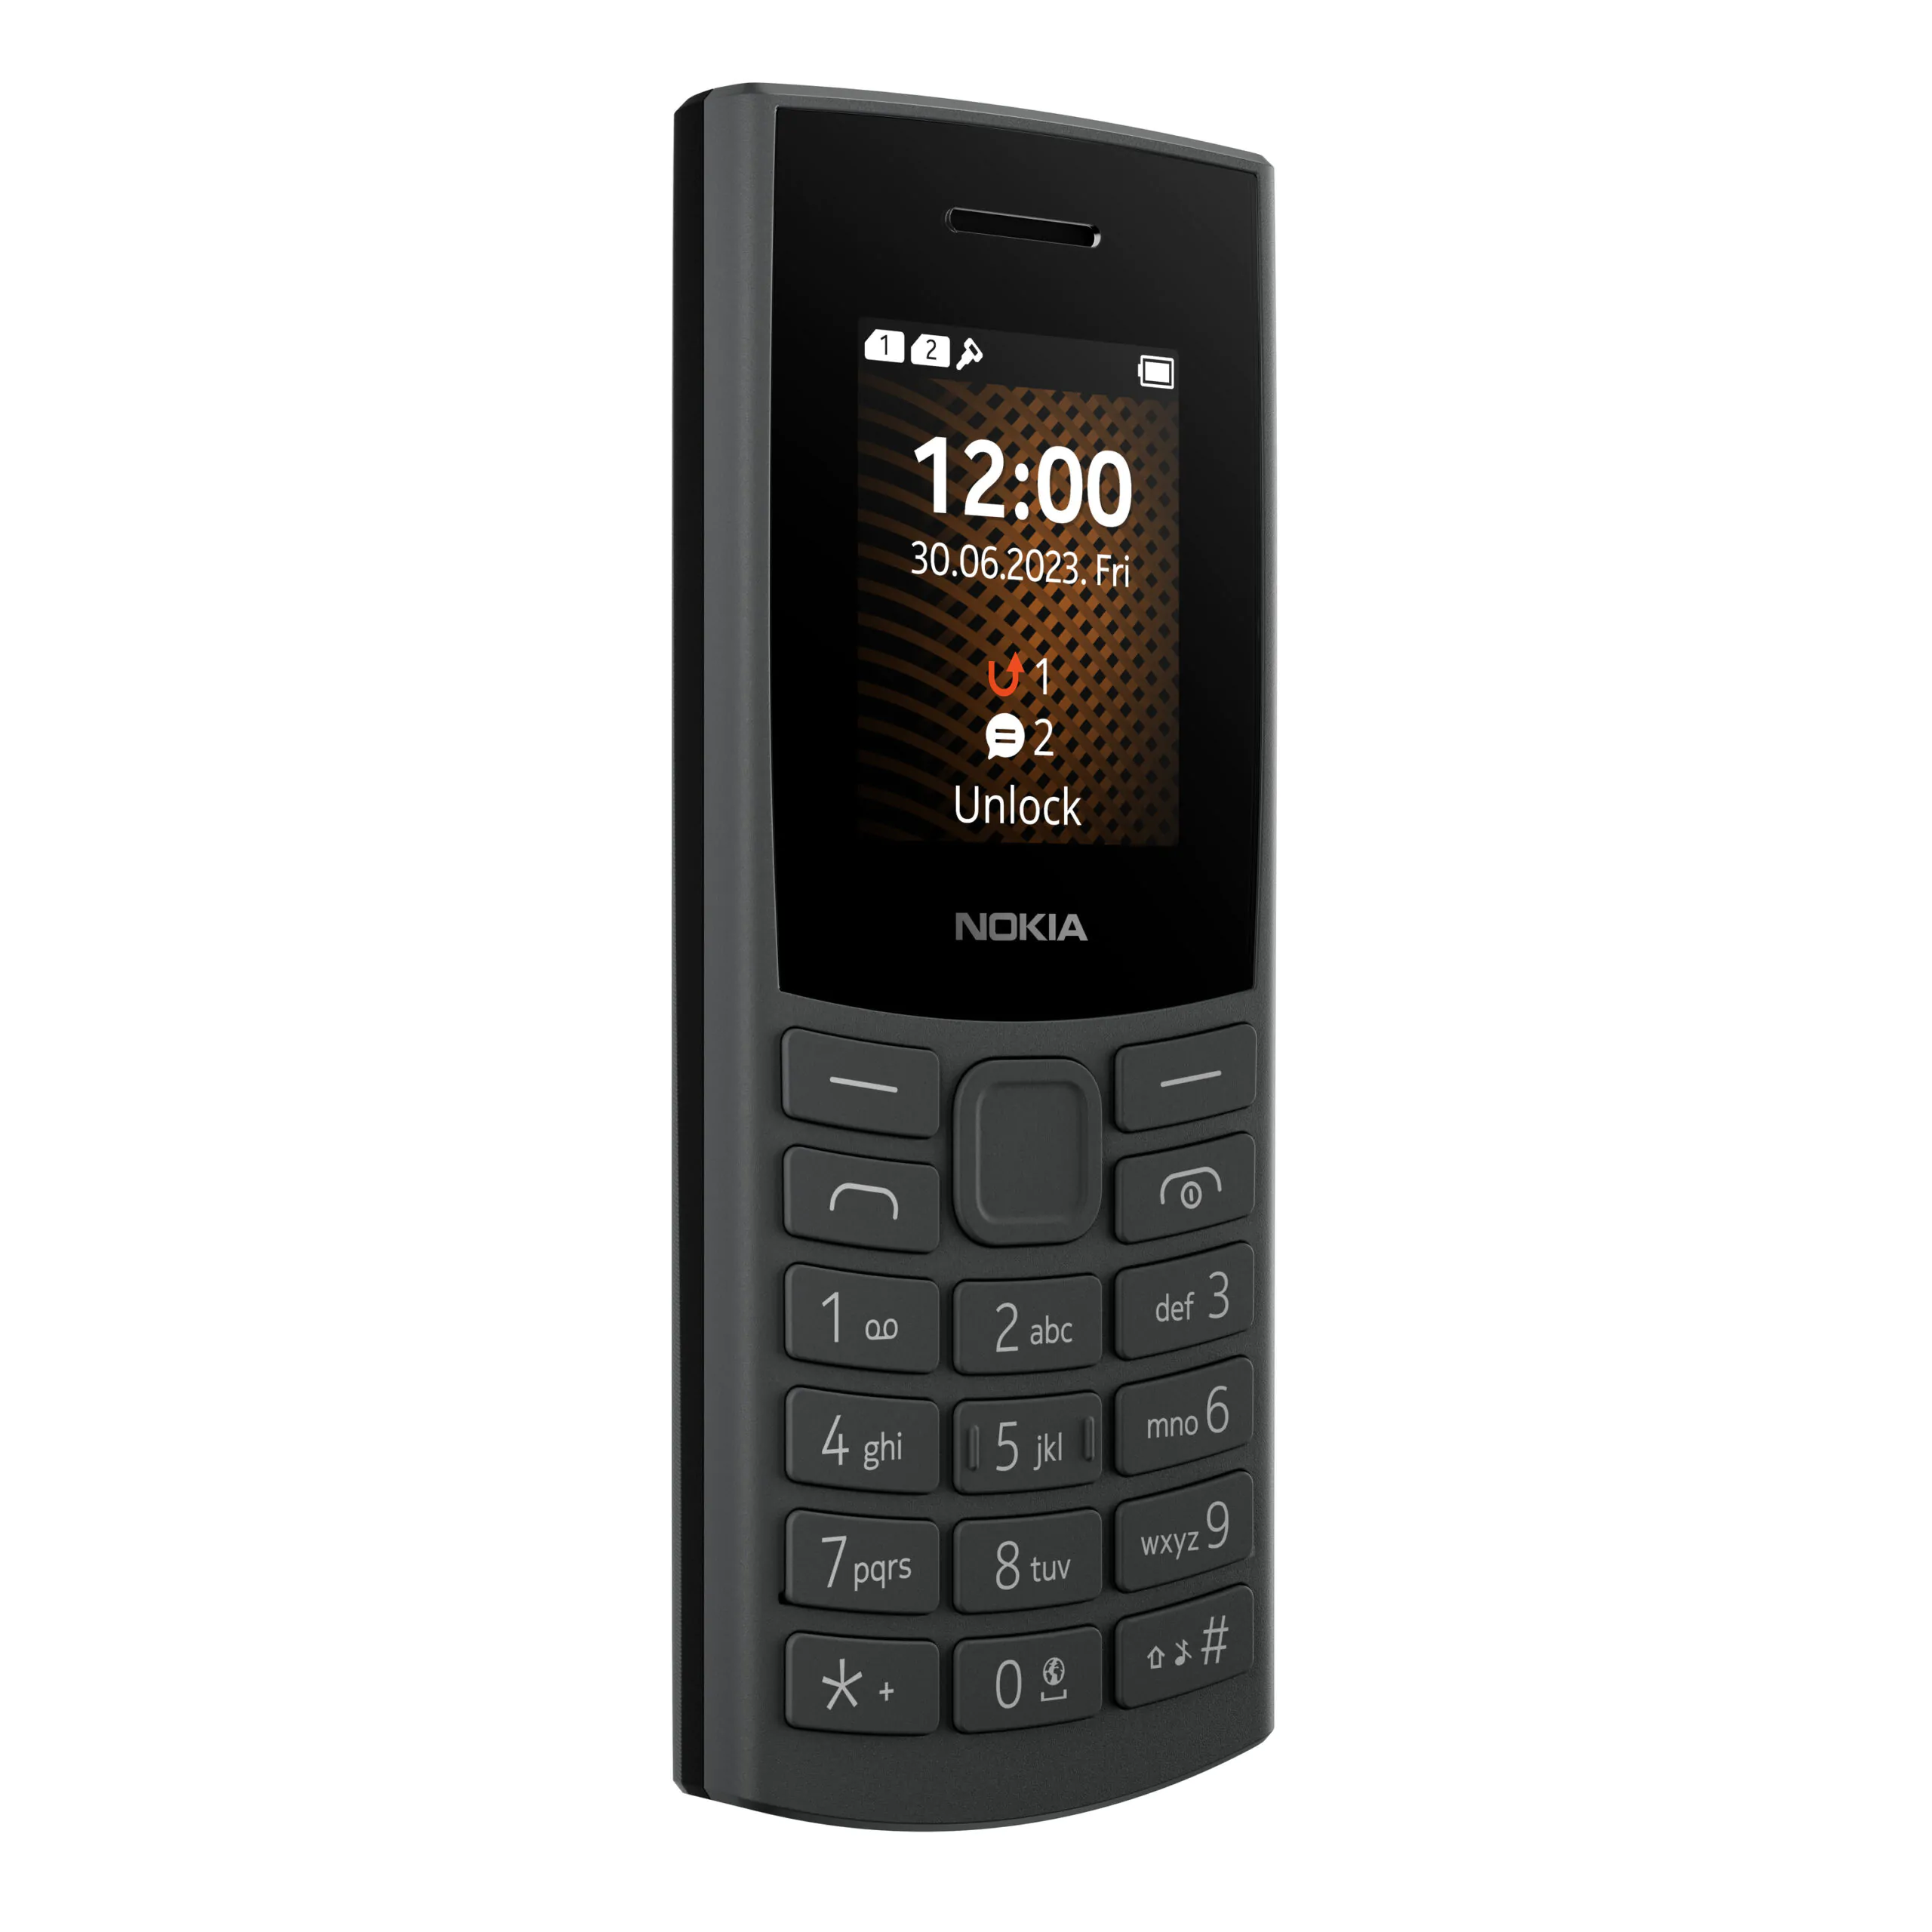 Nokia 105 4G scaled | Nokia 105 4G | โนเกียส่งฟีเจอร์โฟน 2 รุ่นใหม่ Nokia 110 4G และ 105 4G ตอบรับมือถือปุ่มกดยังมีดีมานด์